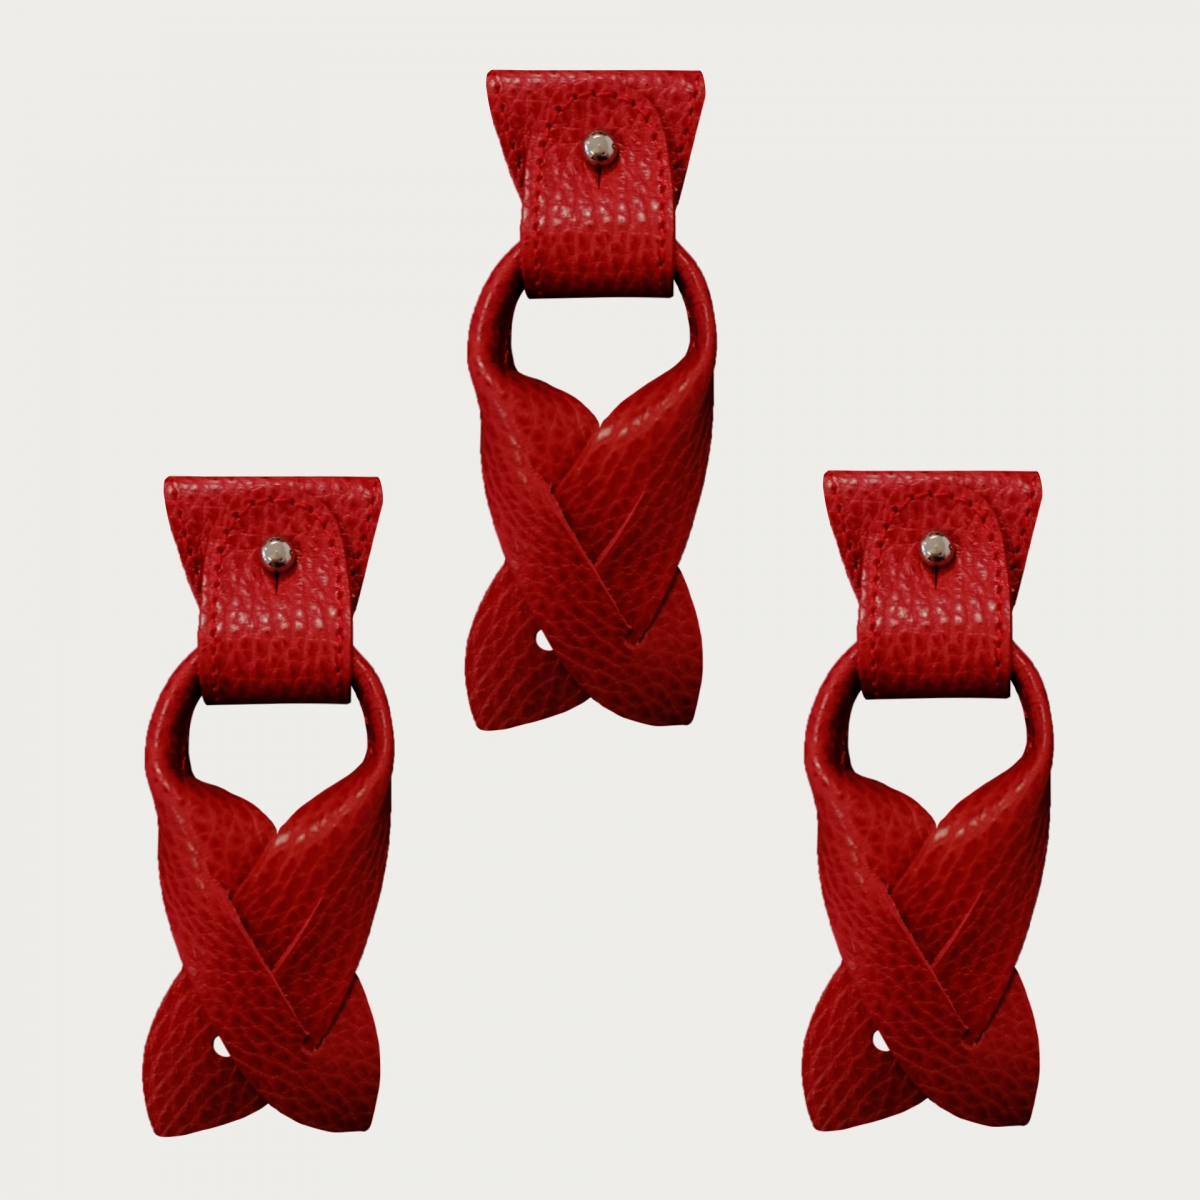 Konvertierbare Enden + terminals für Knöpfe rot Farbe aus Leder für Hosenträger Y-Form mit Clips oder zum Knöpfen